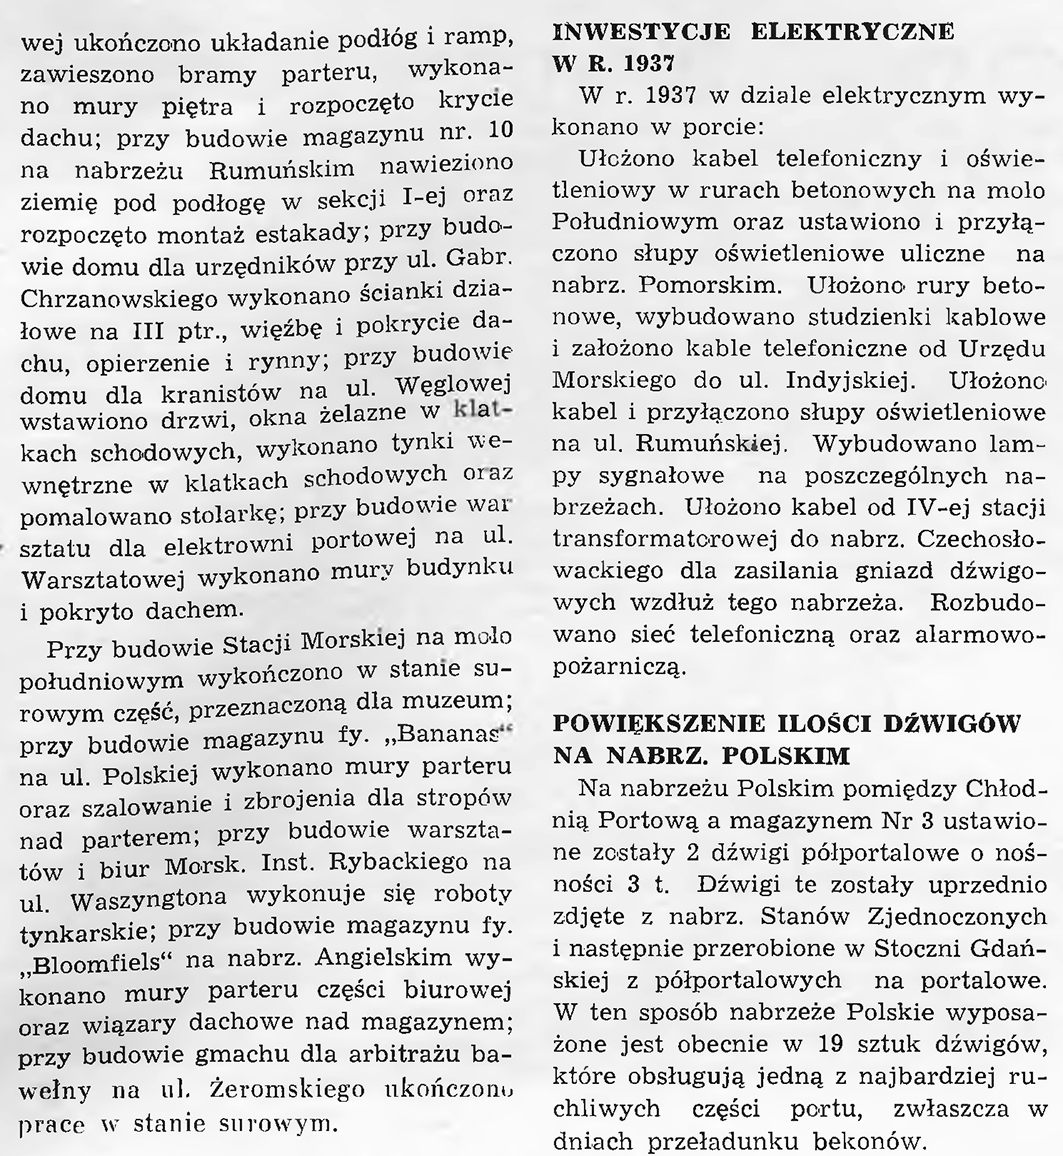 Inwestycje portu gdyńskiego za miesiąc styczeń 1938 r.